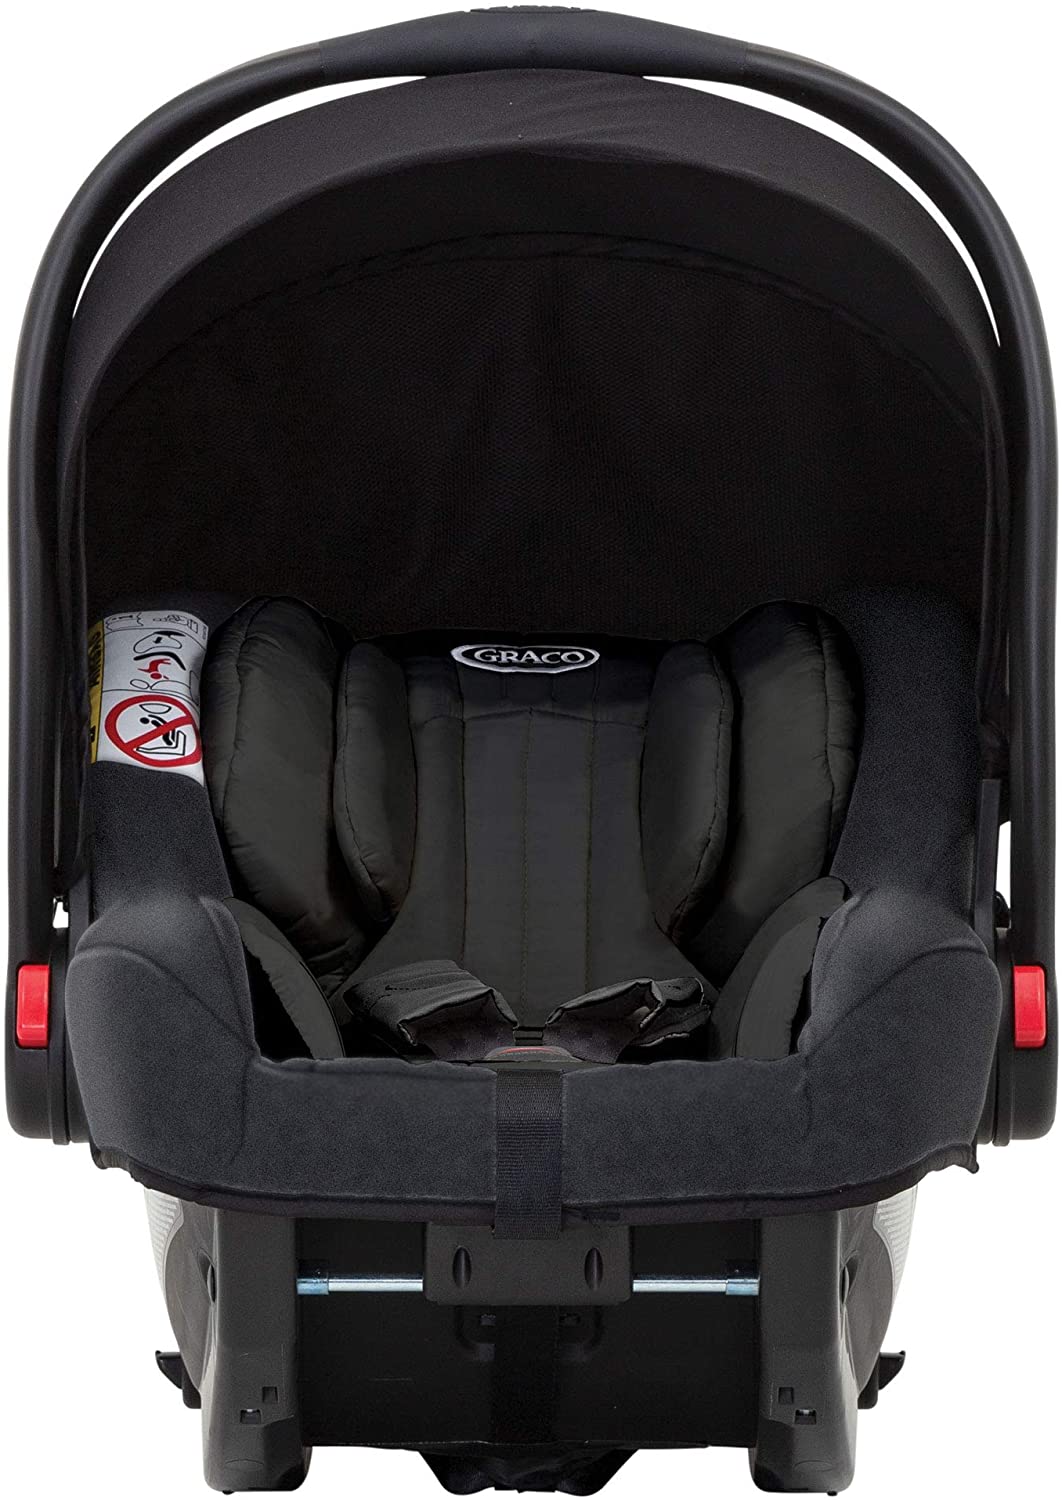 Graco Snugride i-Size black car seat with isofix base